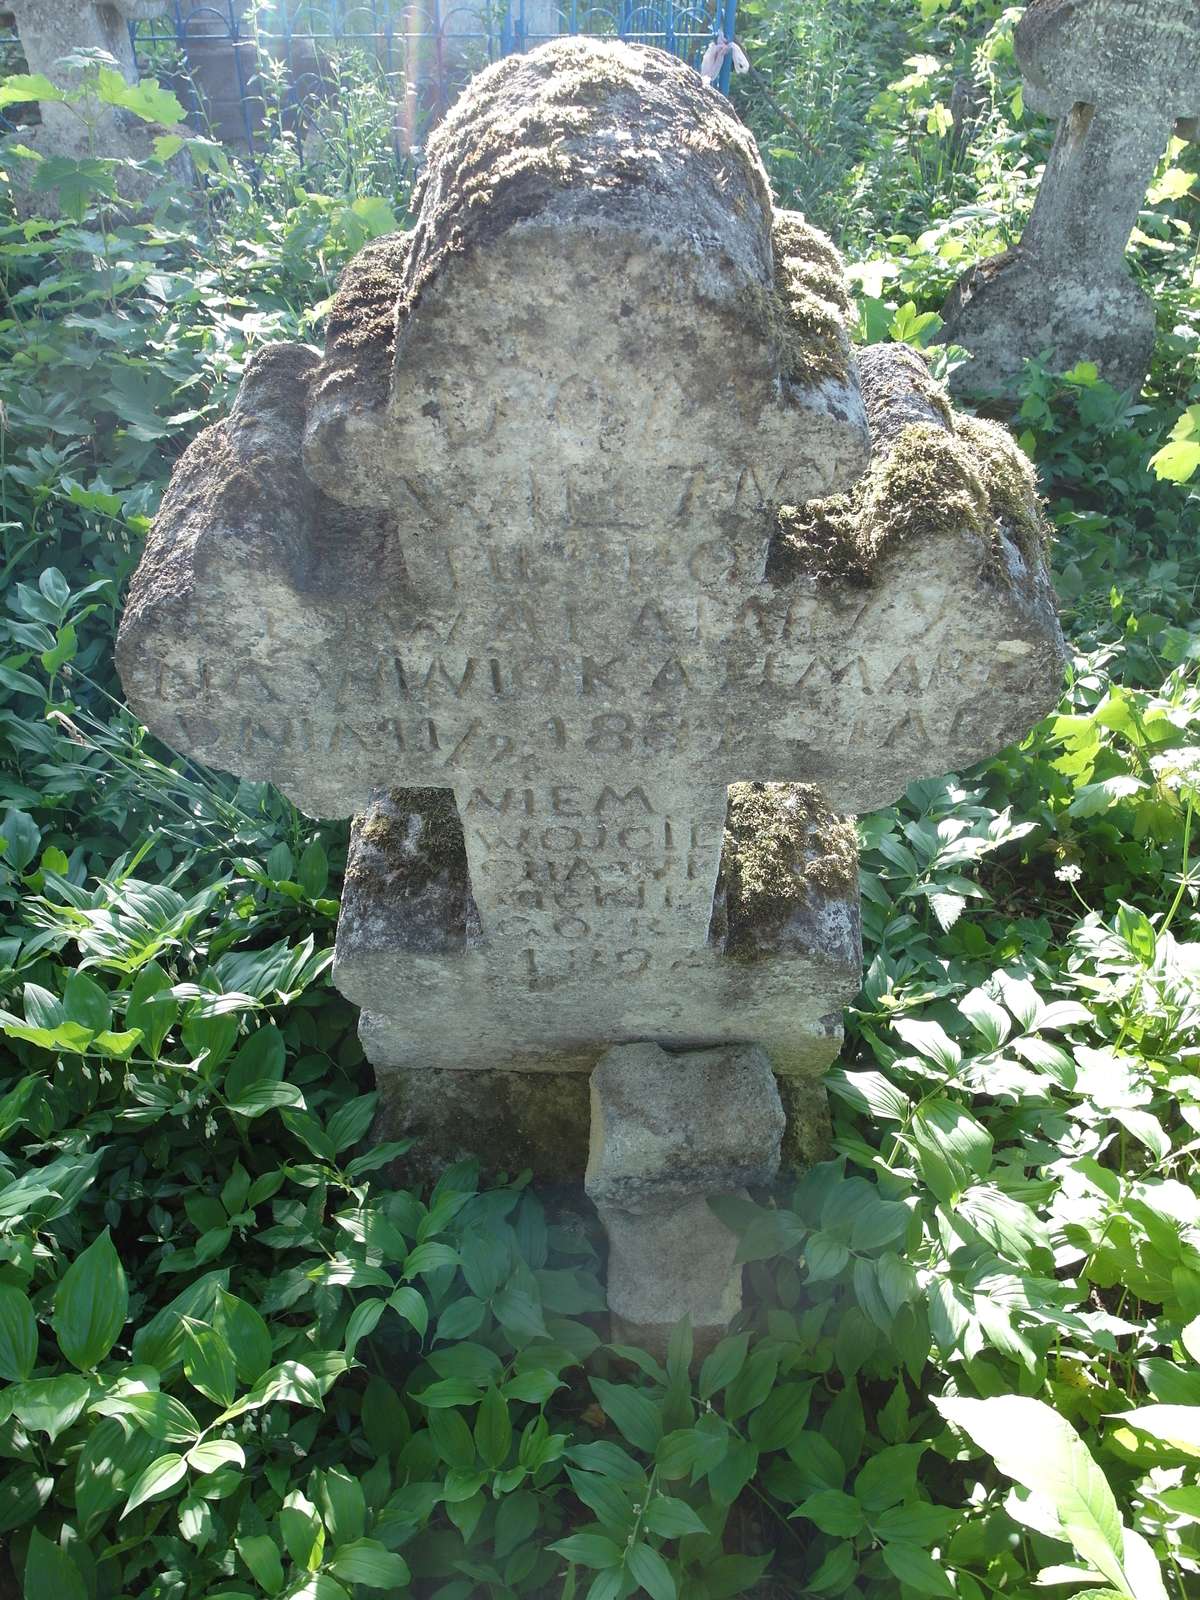 Tombstone of Katarzyna Wiwioka and Wojciech Wiwicki, Zbarazh cemetery, state of 2018